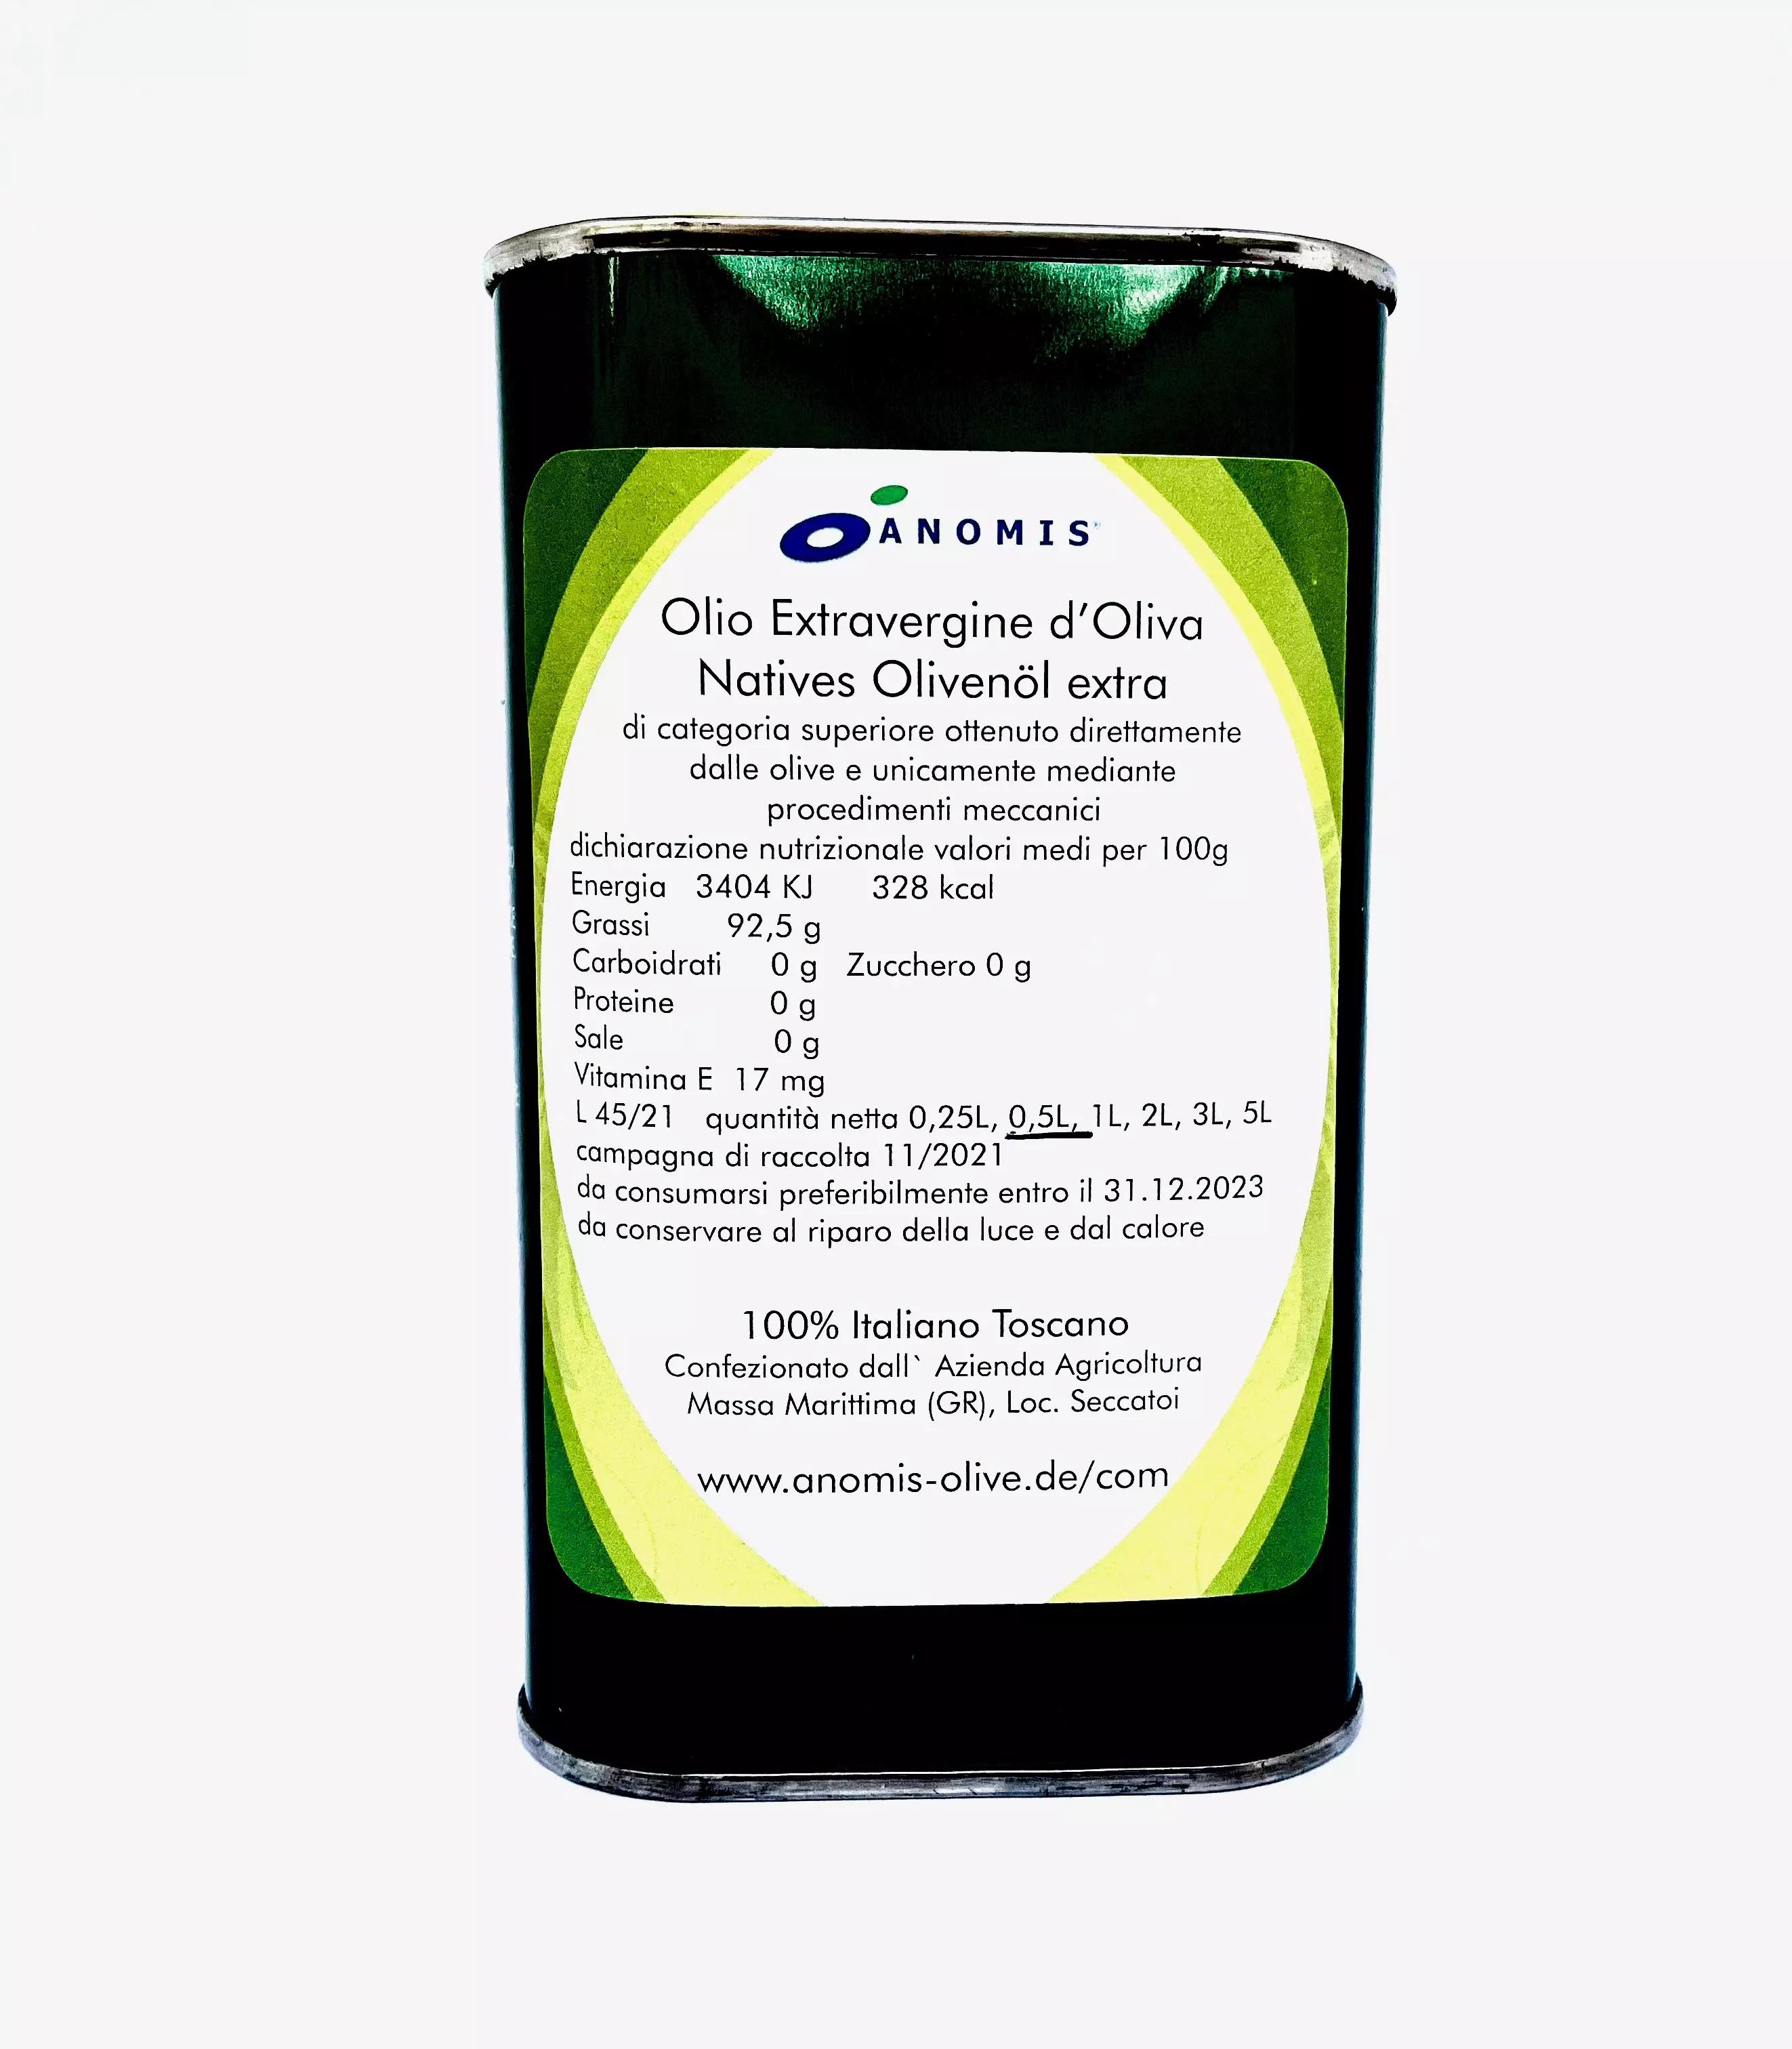 Natives Olivenöl extra (Toskana) - 0,5 Liter